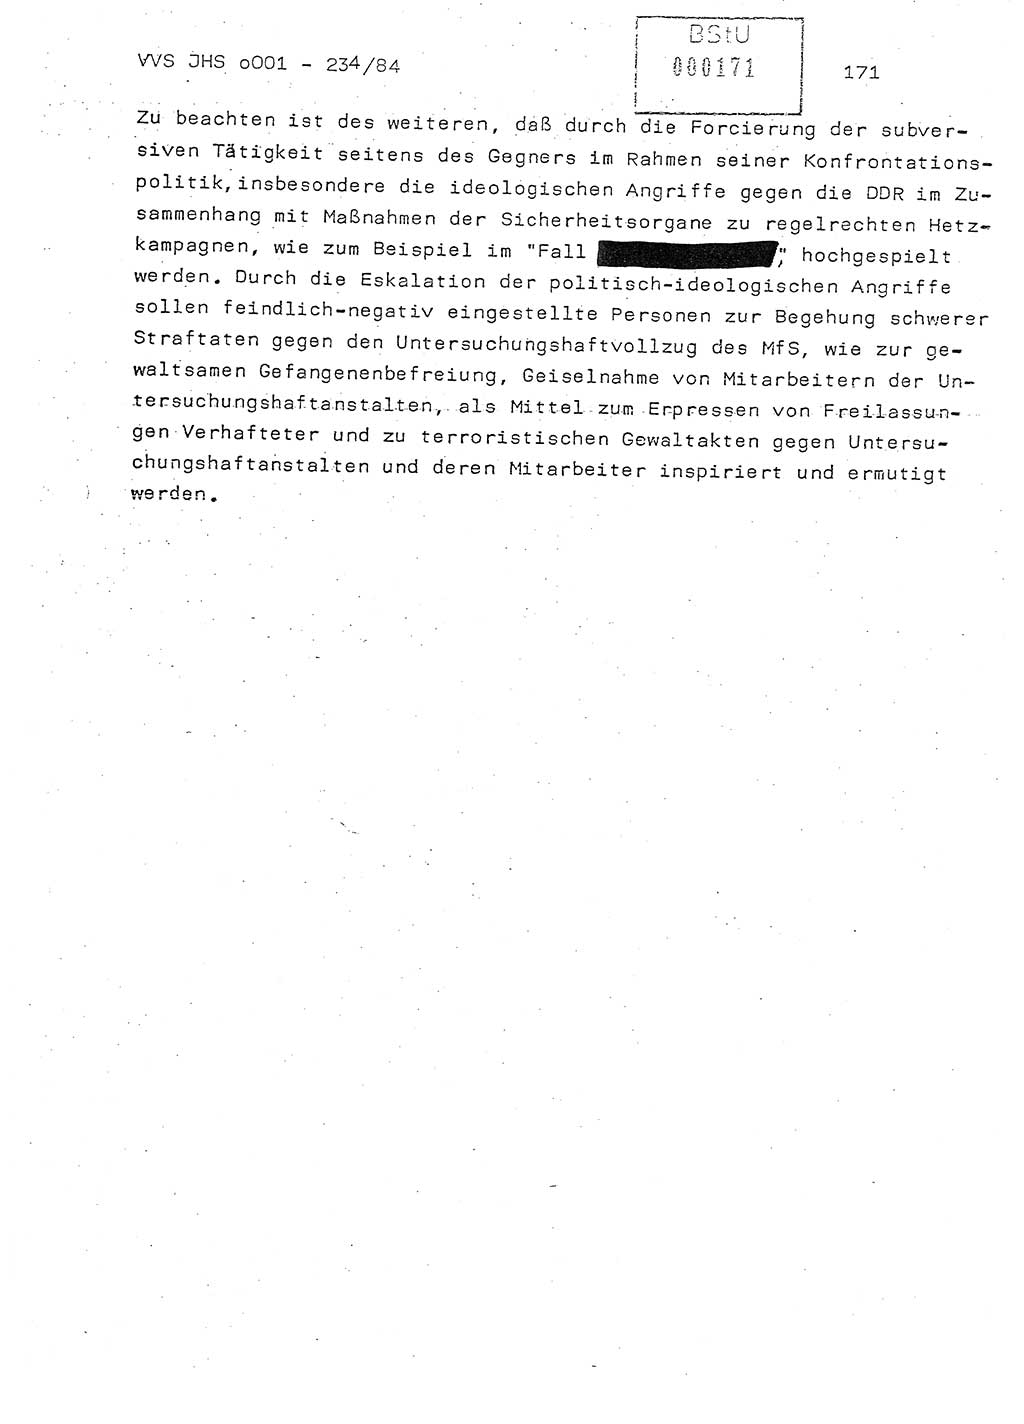 Dissertation Oberst Siegfried Rataizick (Abt. ⅩⅣ), Oberstleutnant Volkmar Heinz (Abt. ⅩⅣ), Oberstleutnant Werner Stein (HA Ⅸ), Hauptmann Heinz Conrad (JHS), Ministerium für Staatssicherheit (MfS) [Deutsche Demokratische Republik (DDR)], Juristische Hochschule (JHS), Vertrauliche Verschlußsache (VVS) o001-234/84, Potsdam 1984, Seite 171 (Diss. MfS DDR JHS VVS o001-234/84 1984, S. 171)